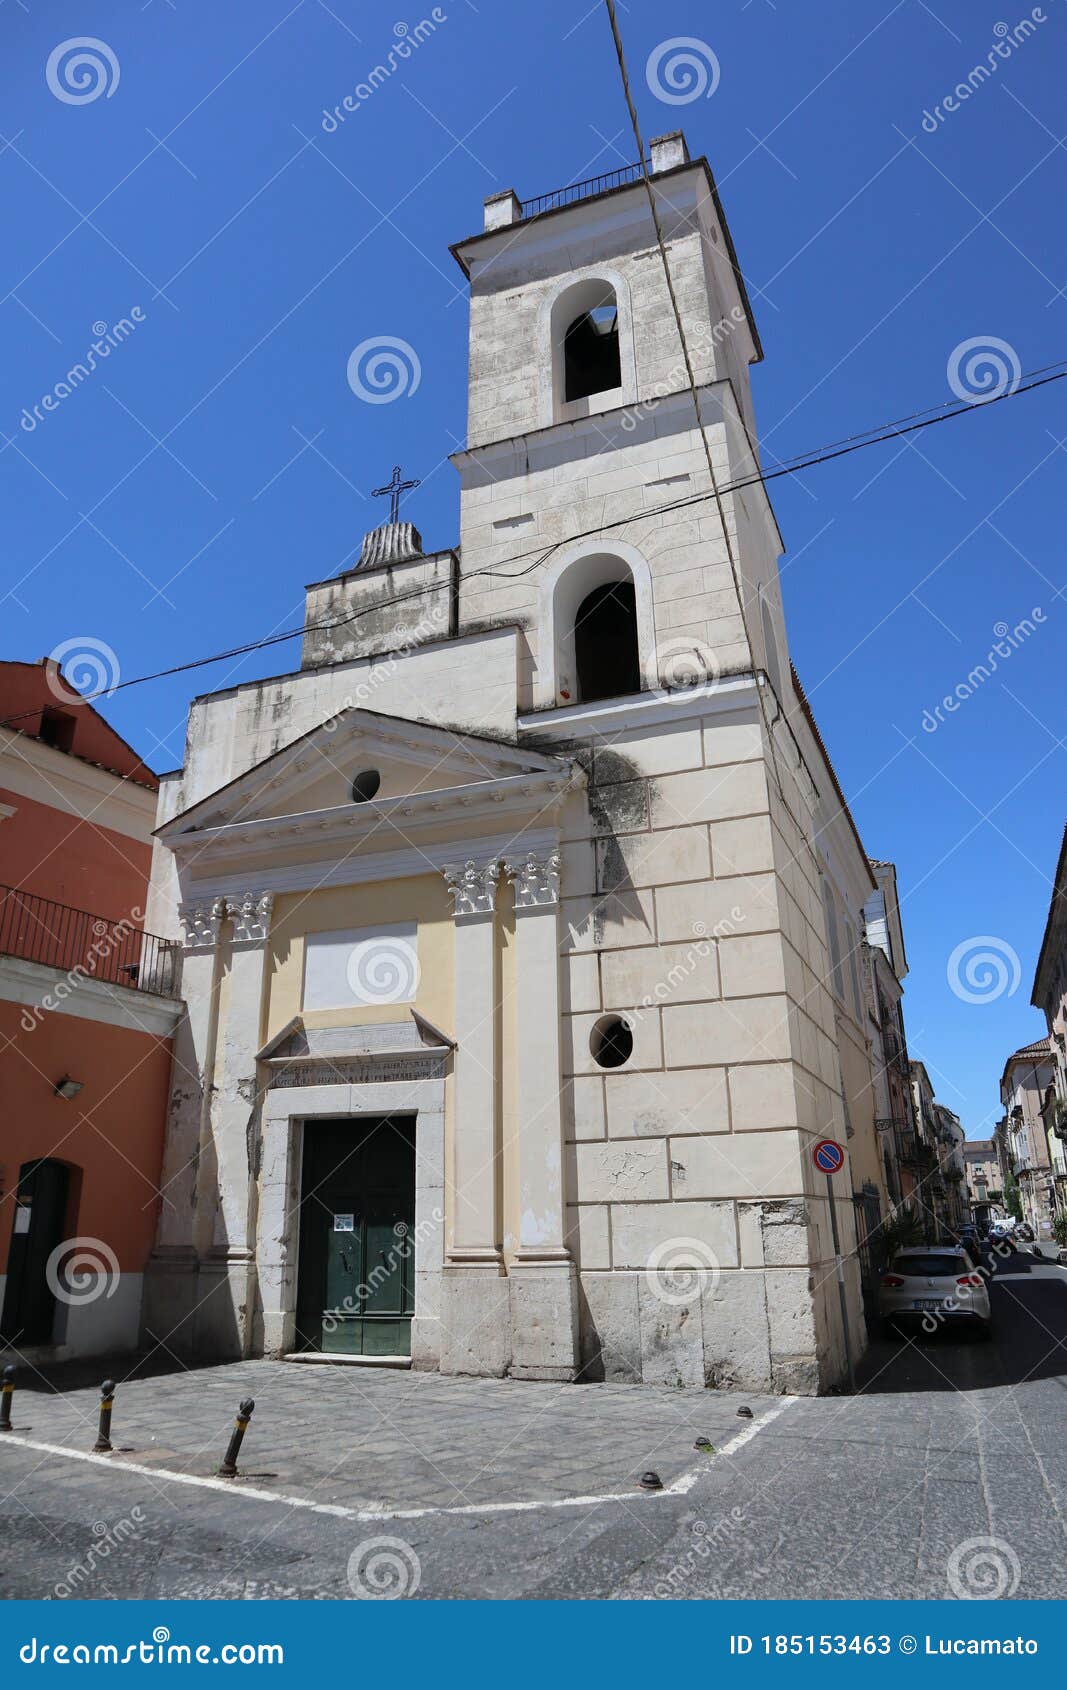 Capua - Chiesa Di San Marcello Editorial Stock Photo - Image of ...